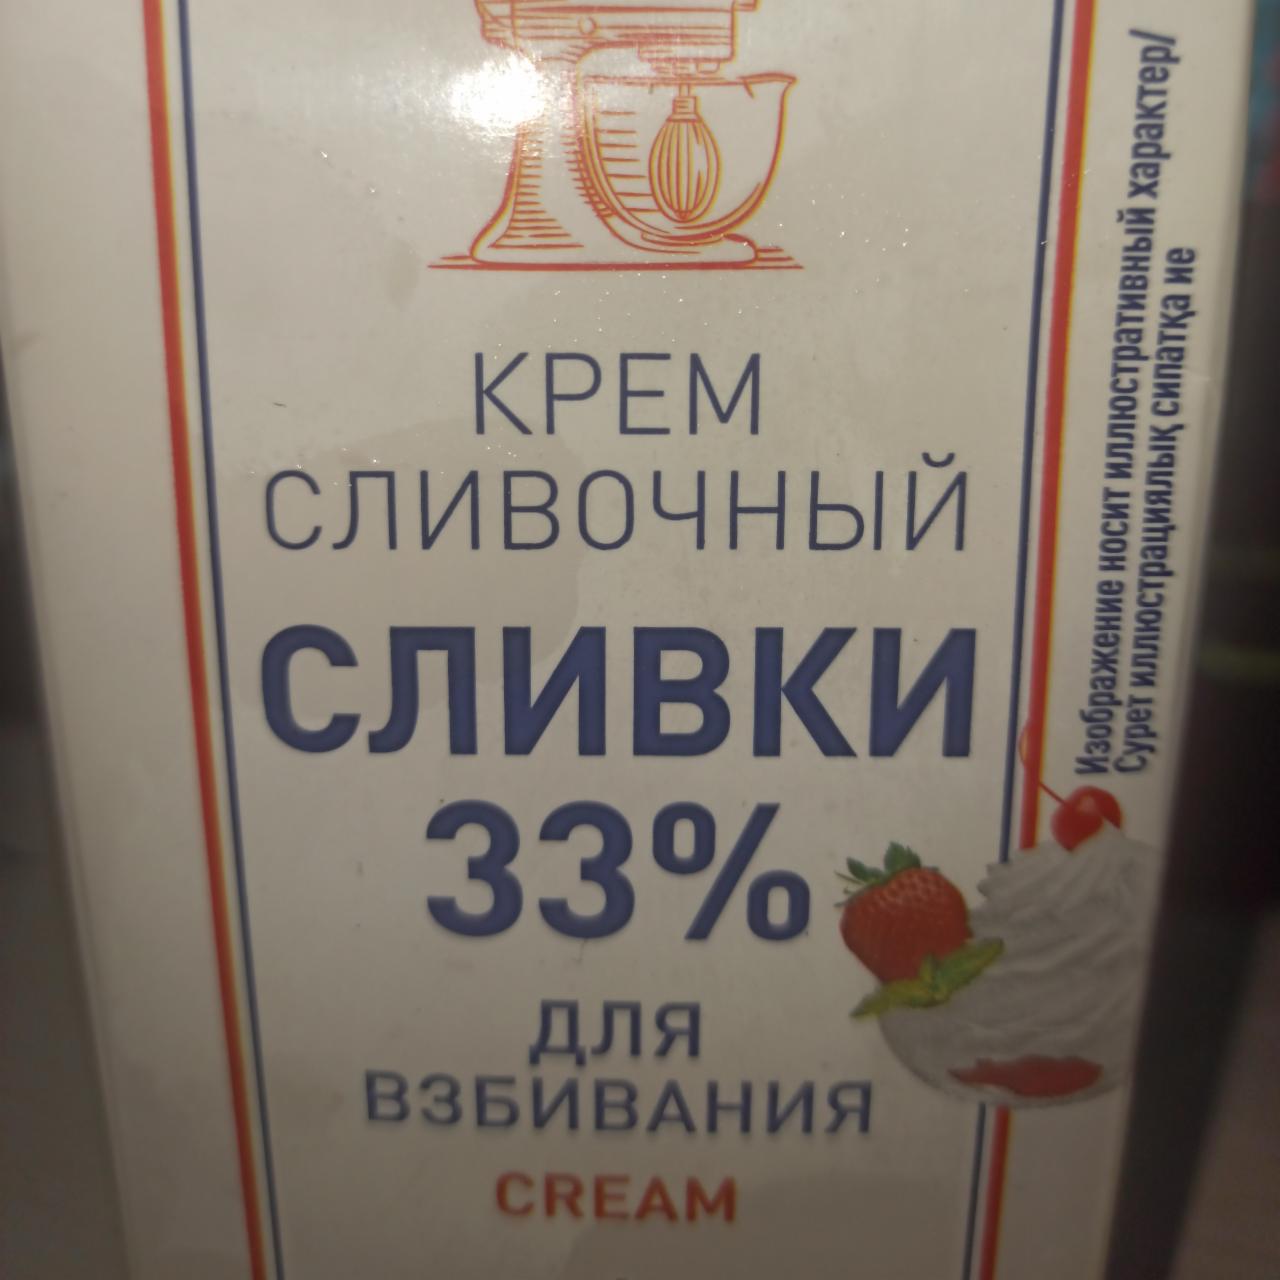 Фото - Крем Сливочный Сливки 33% Metro Chef